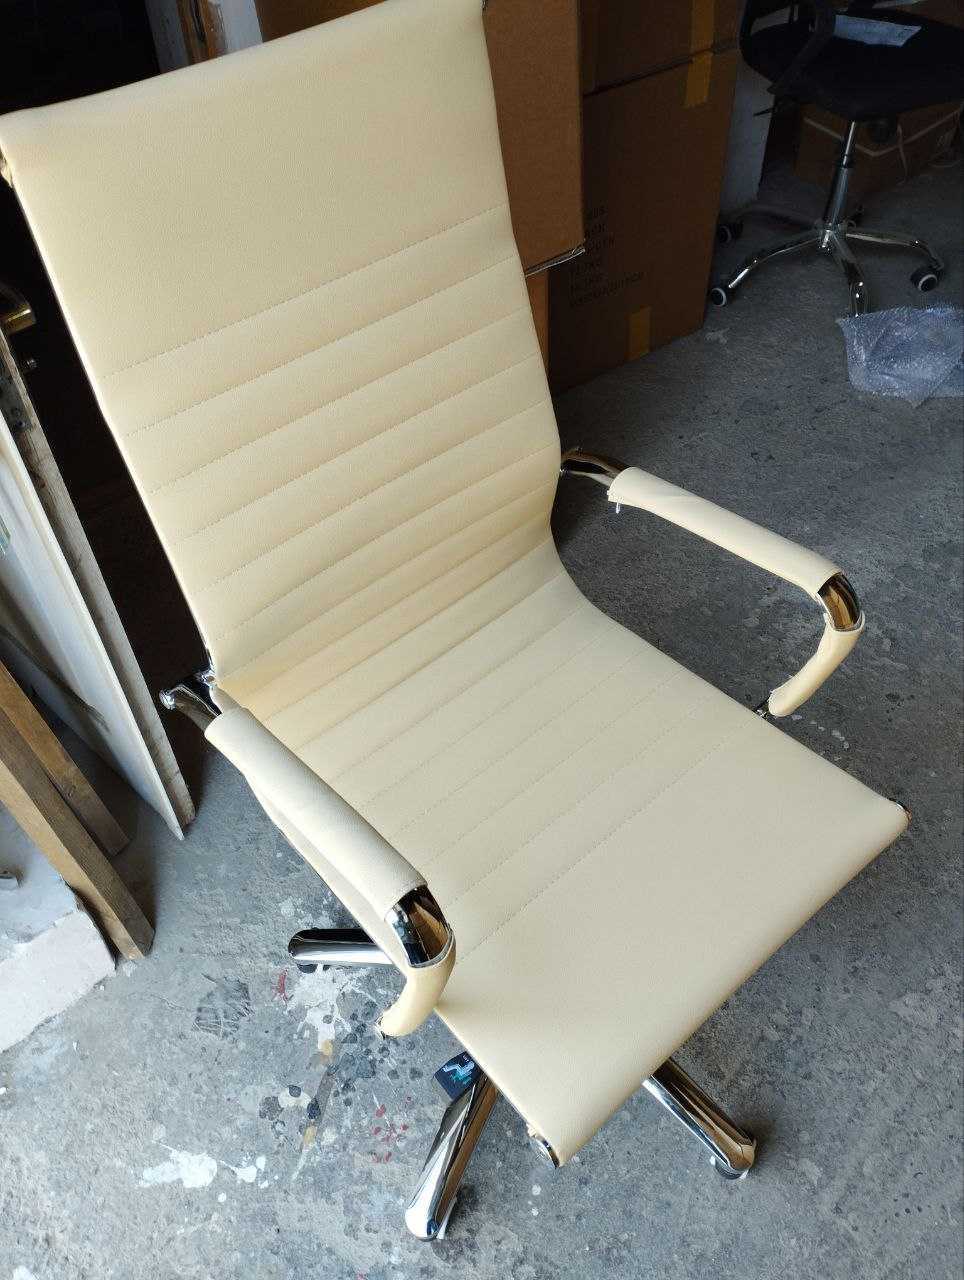 Продается офисное кресло FLEX для офиса и для дома от первых рук.